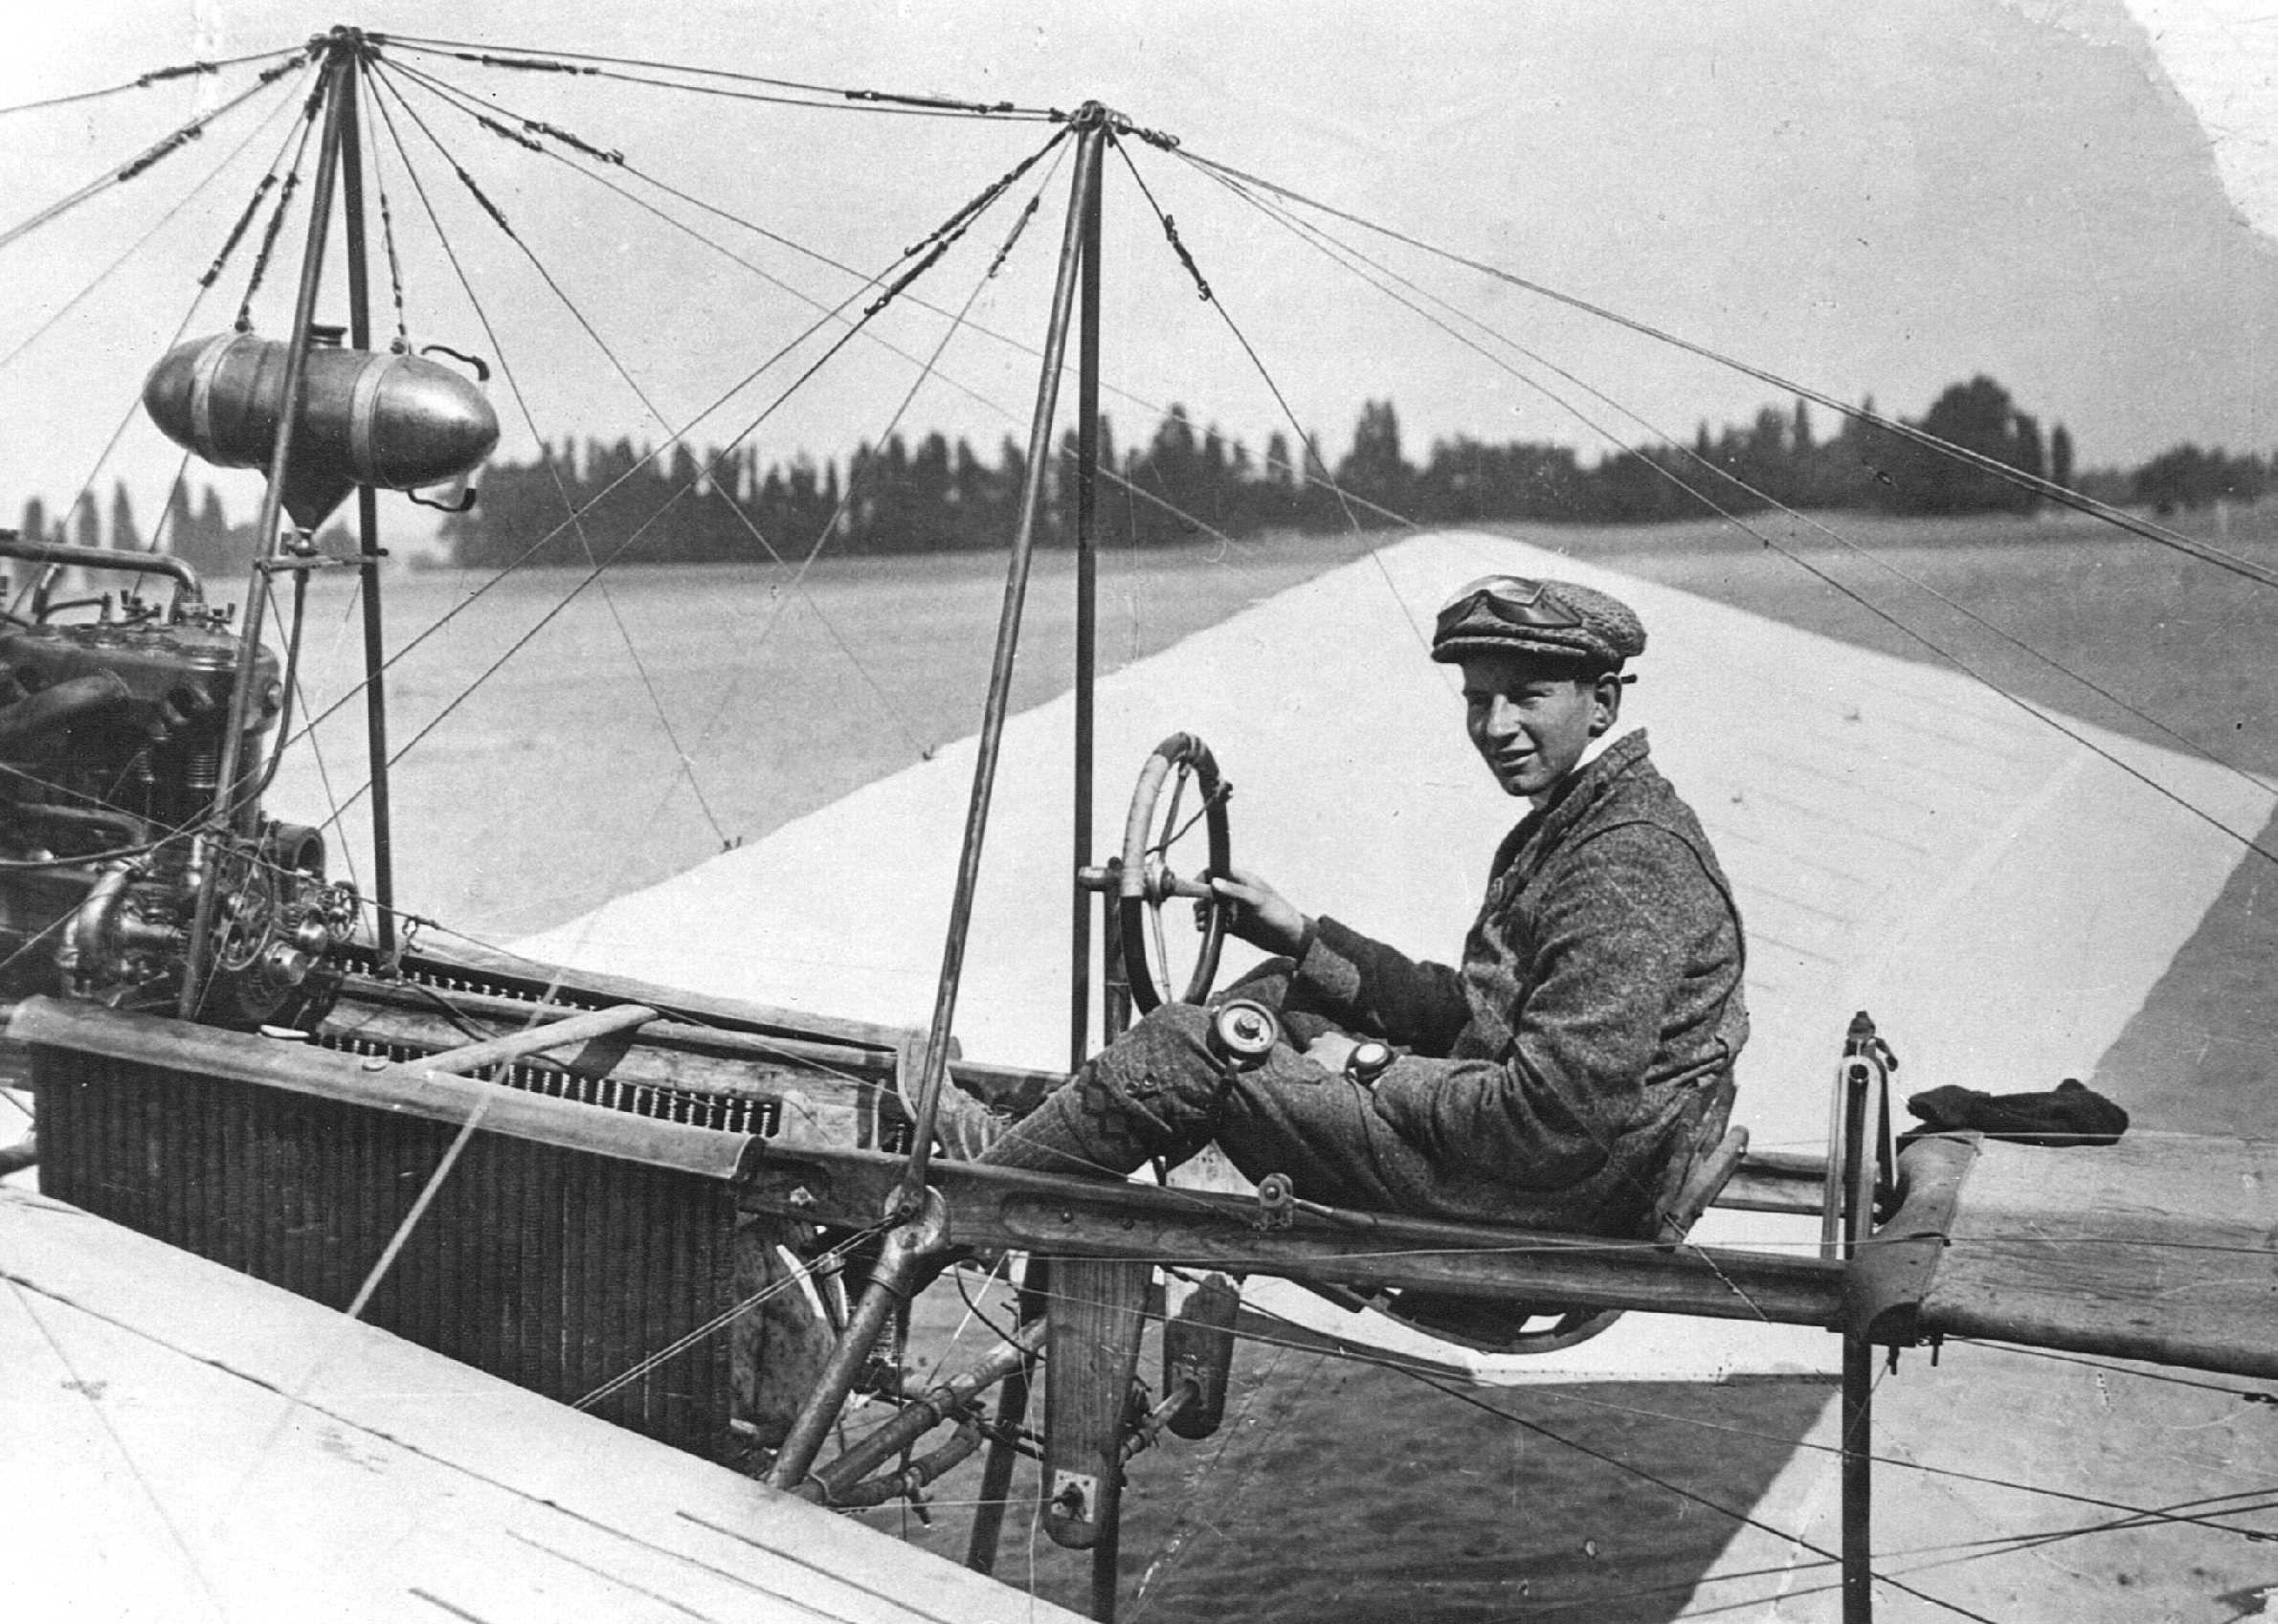 1910-01-01 00:00:00 LELEYSTAD - De 'Fokker Spin' het eerste vliegtuig van Anthony Fokker. Op 31 augustus 1911 vloog Fokker zijn eerste succesvolle rondjes rond St.Bavo in Haarlem. Daarna vestigde hij een vliegtuigfabriek en vliegschool op het vliegveld 'Johannistal' bij Berlijn. Van 1912 t/m 1913 werden in totaal 25 Spinnen gebouwd, waaronder een aantal in een tweepersoons uitvoering. ANP PHOTO